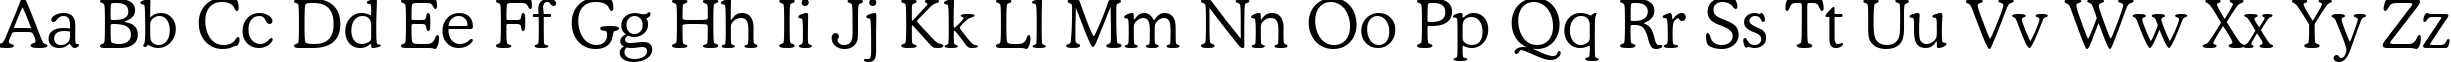 Пример написания английского алфавита шрифтом font114